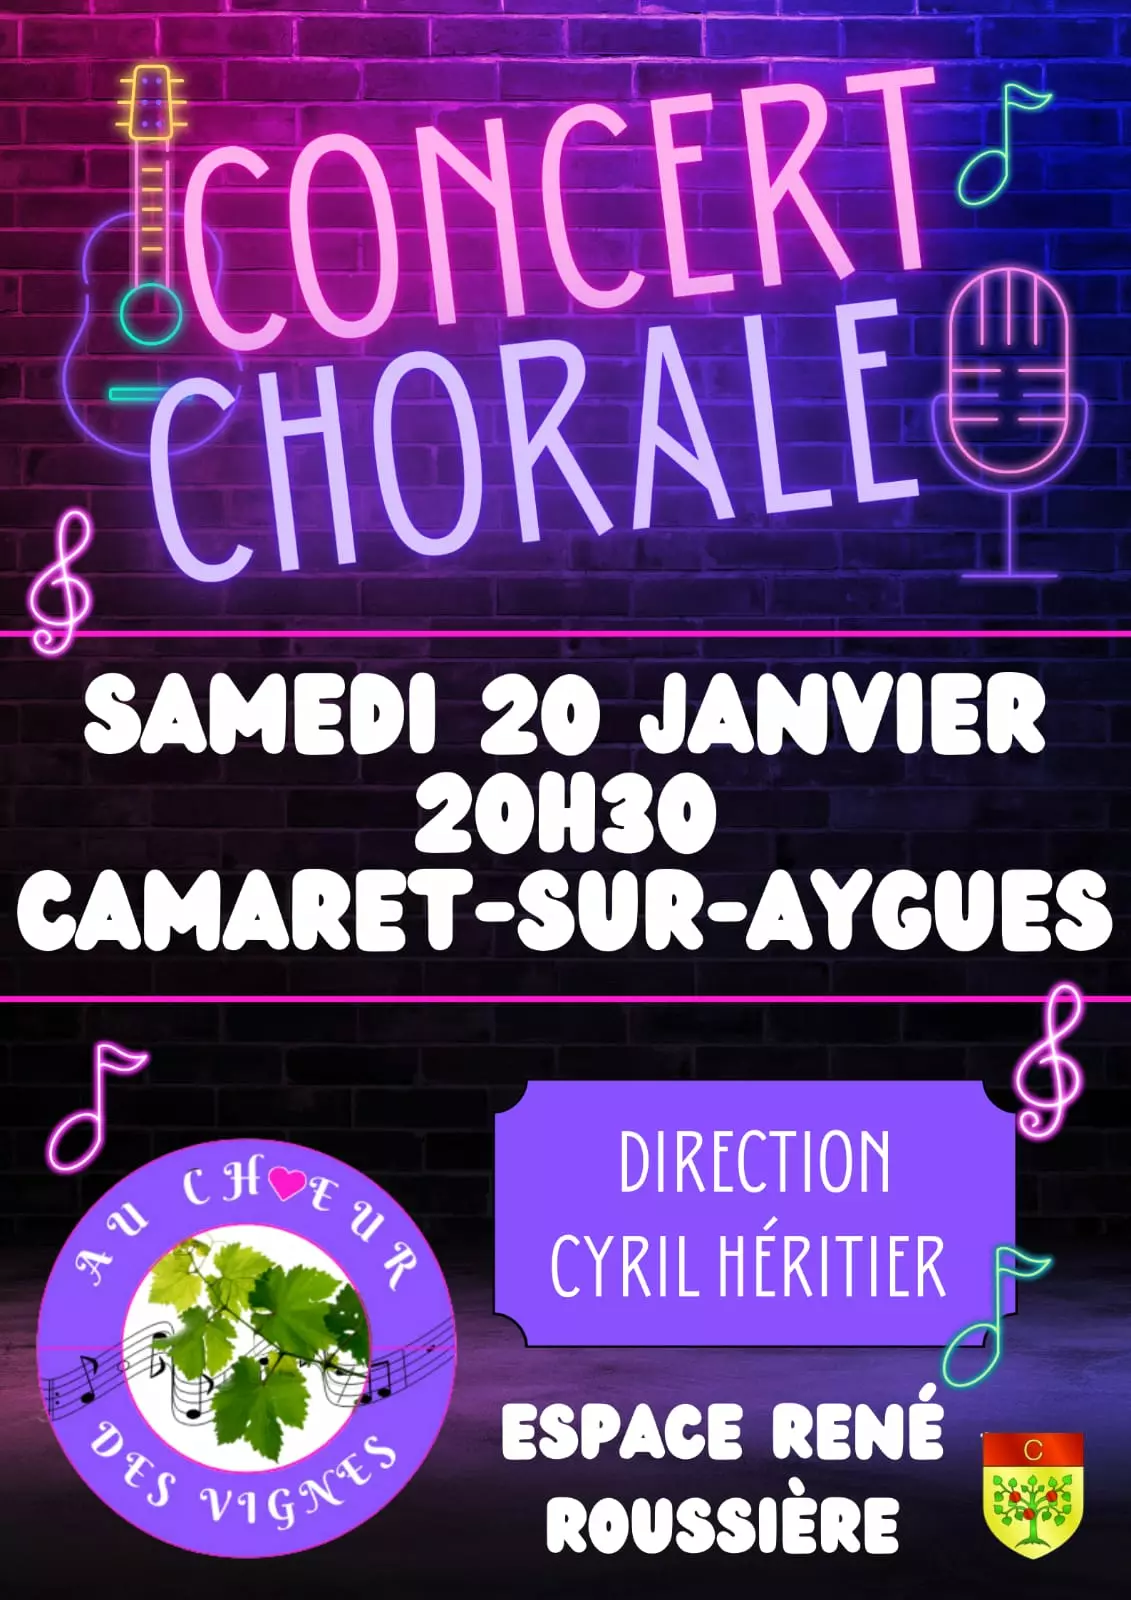 Grand concert-chorale organisé par l'Ensemble Vocal au Chœur des Vignes le samedi 20 janvier à 20h30 à la salle René Roussière